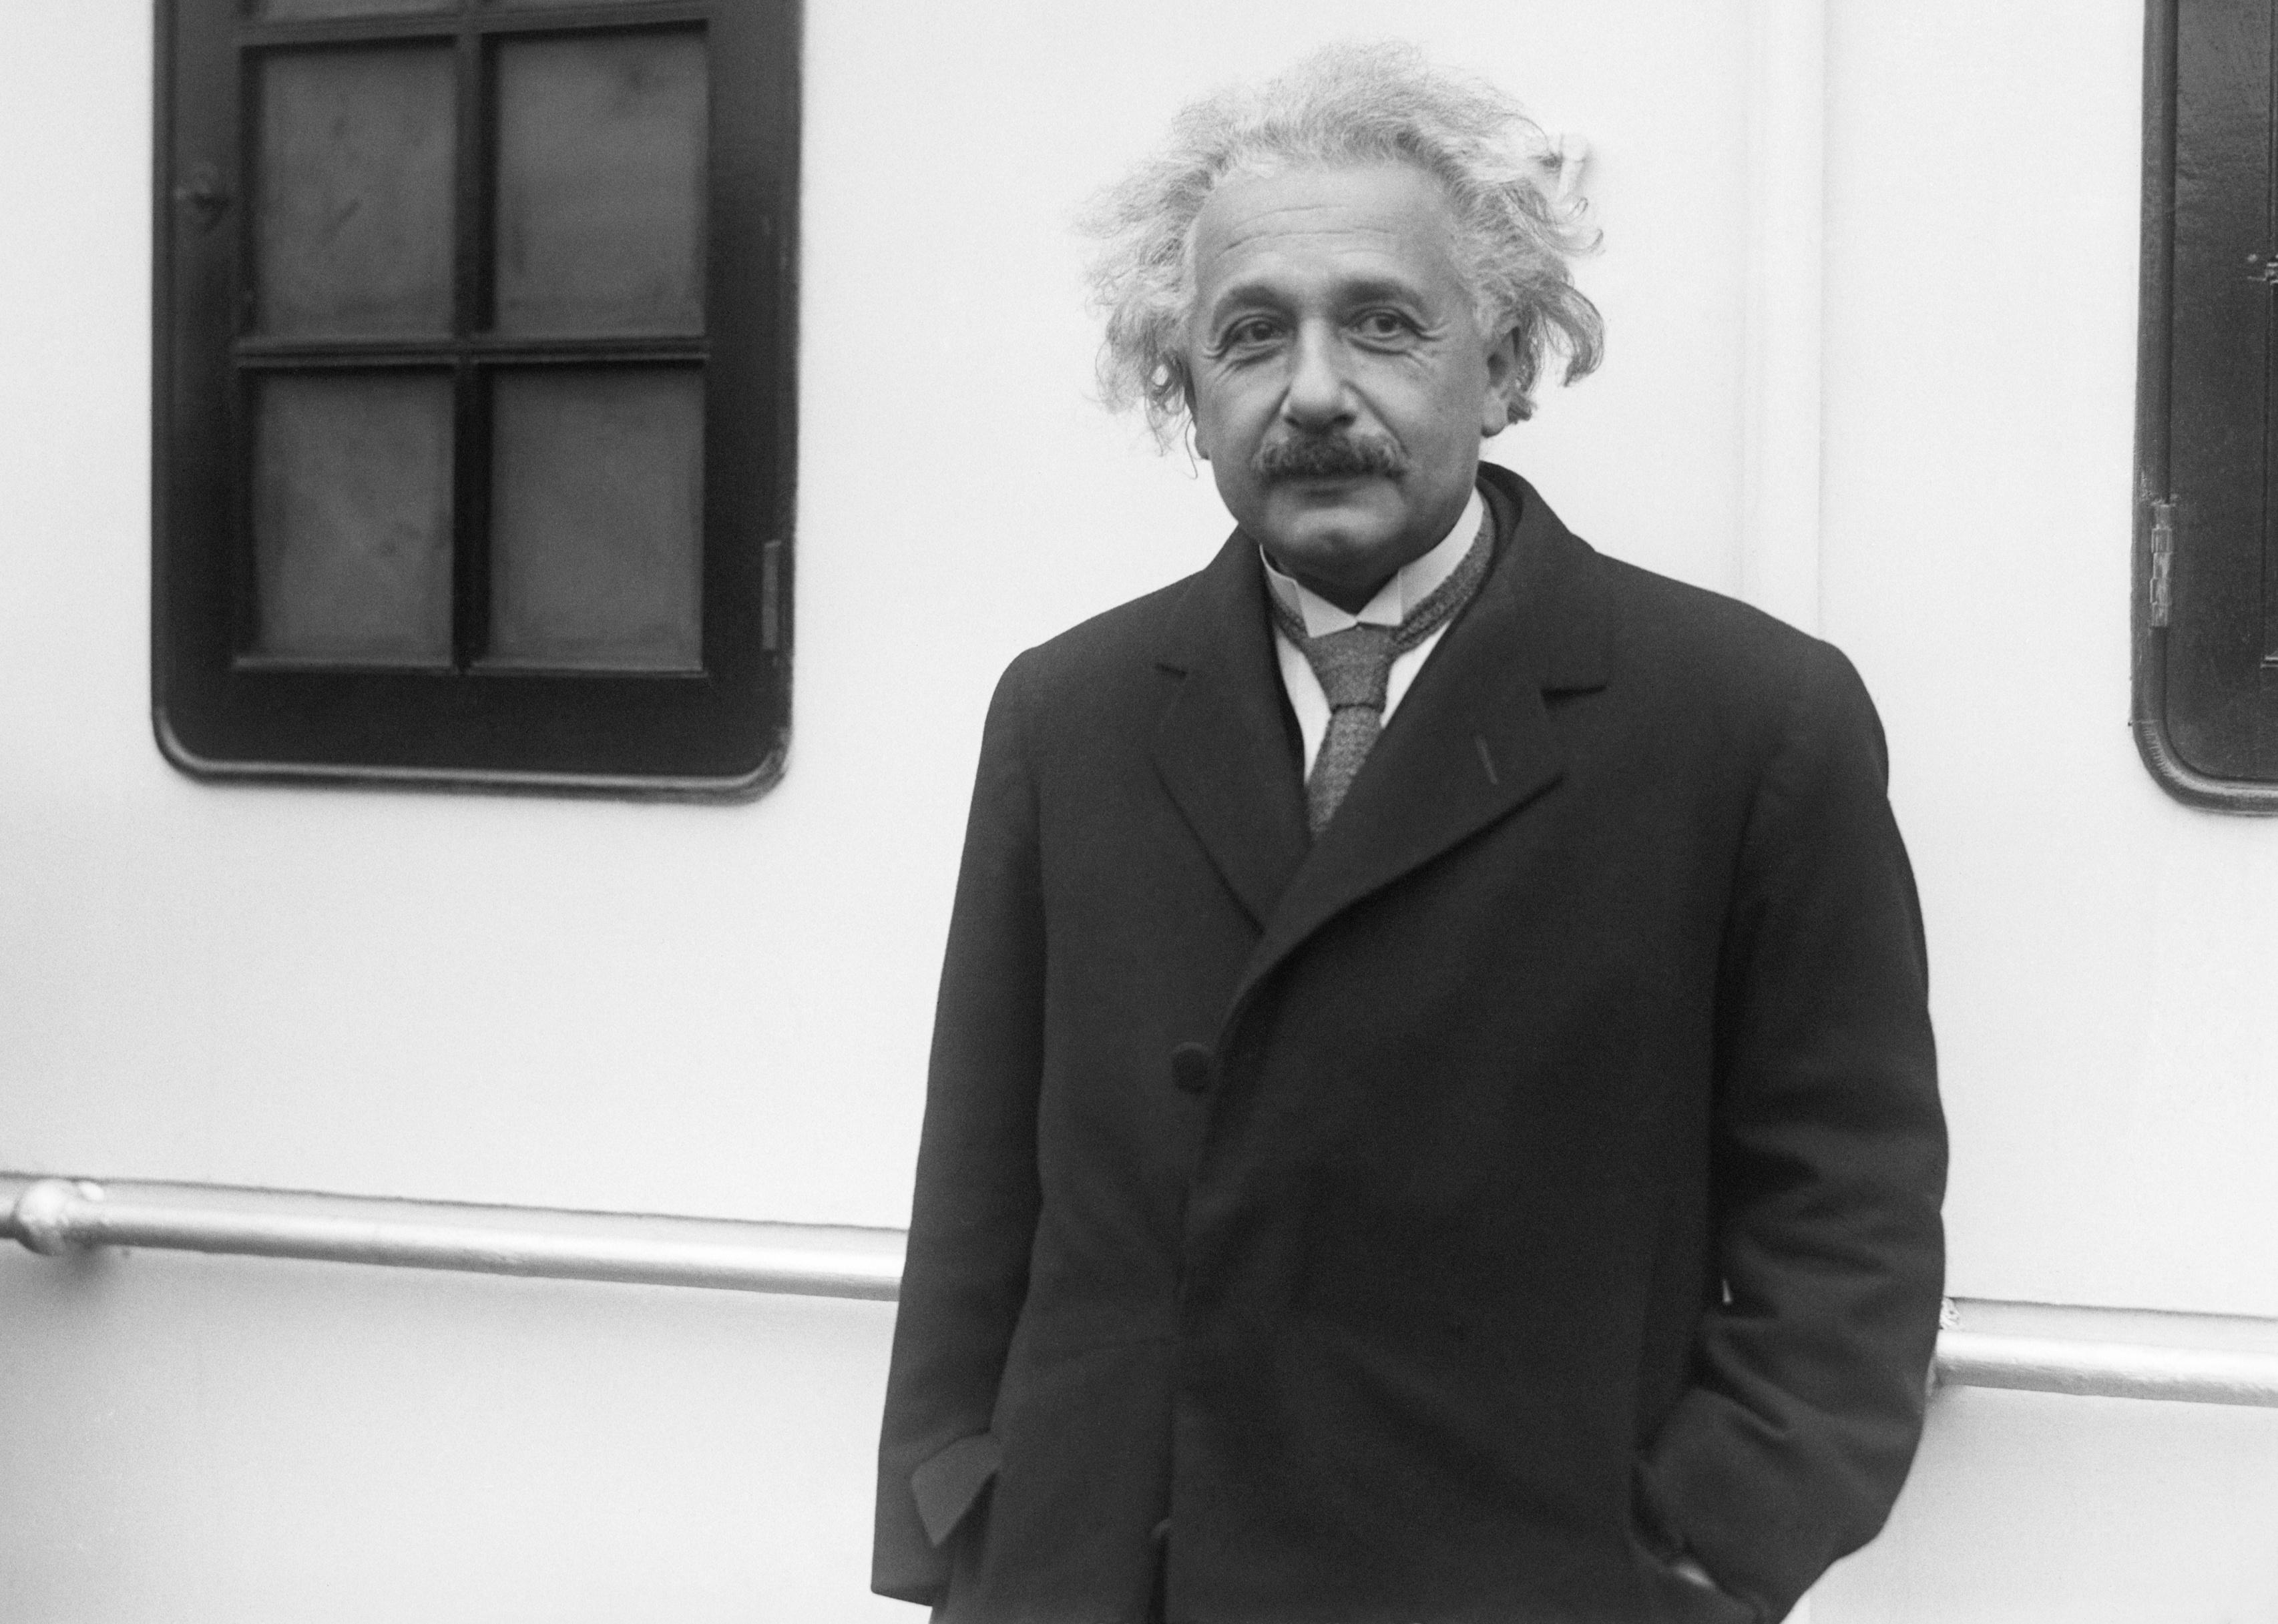 Albert Einstein in a long dark coat.